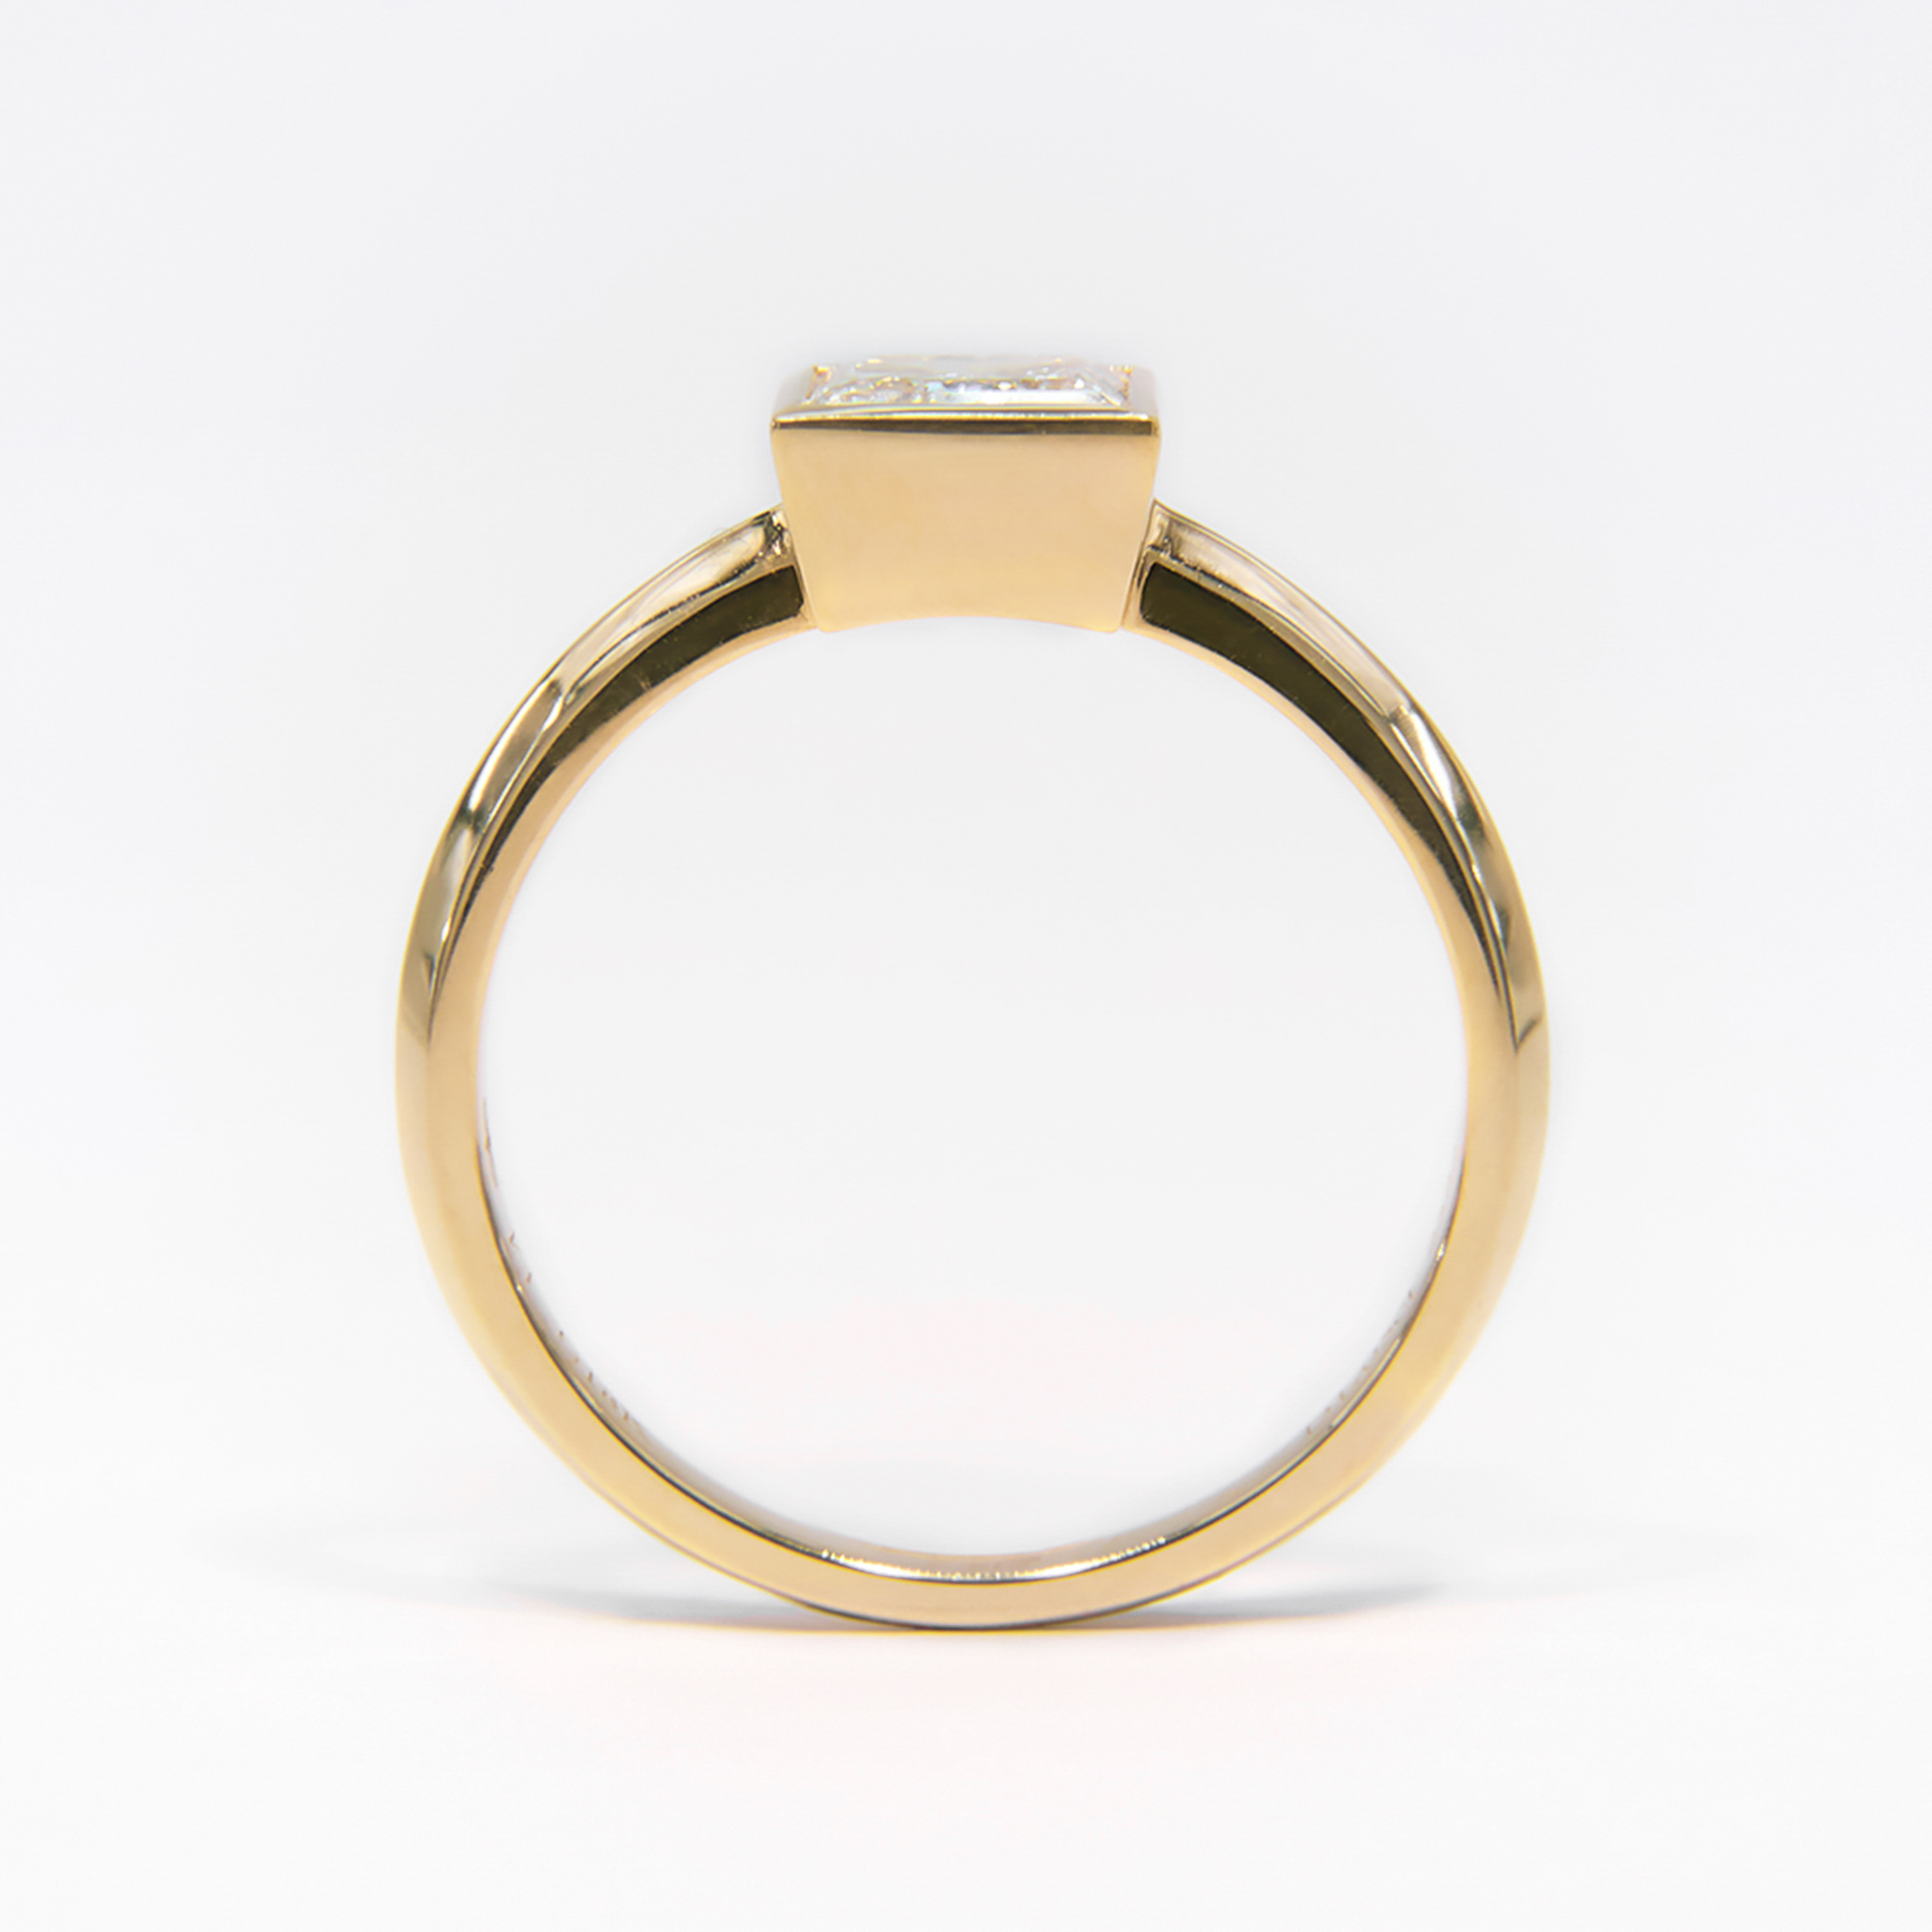 IGI Certified 18K Yellow Gold Princess Lab Grown Diamond Ring